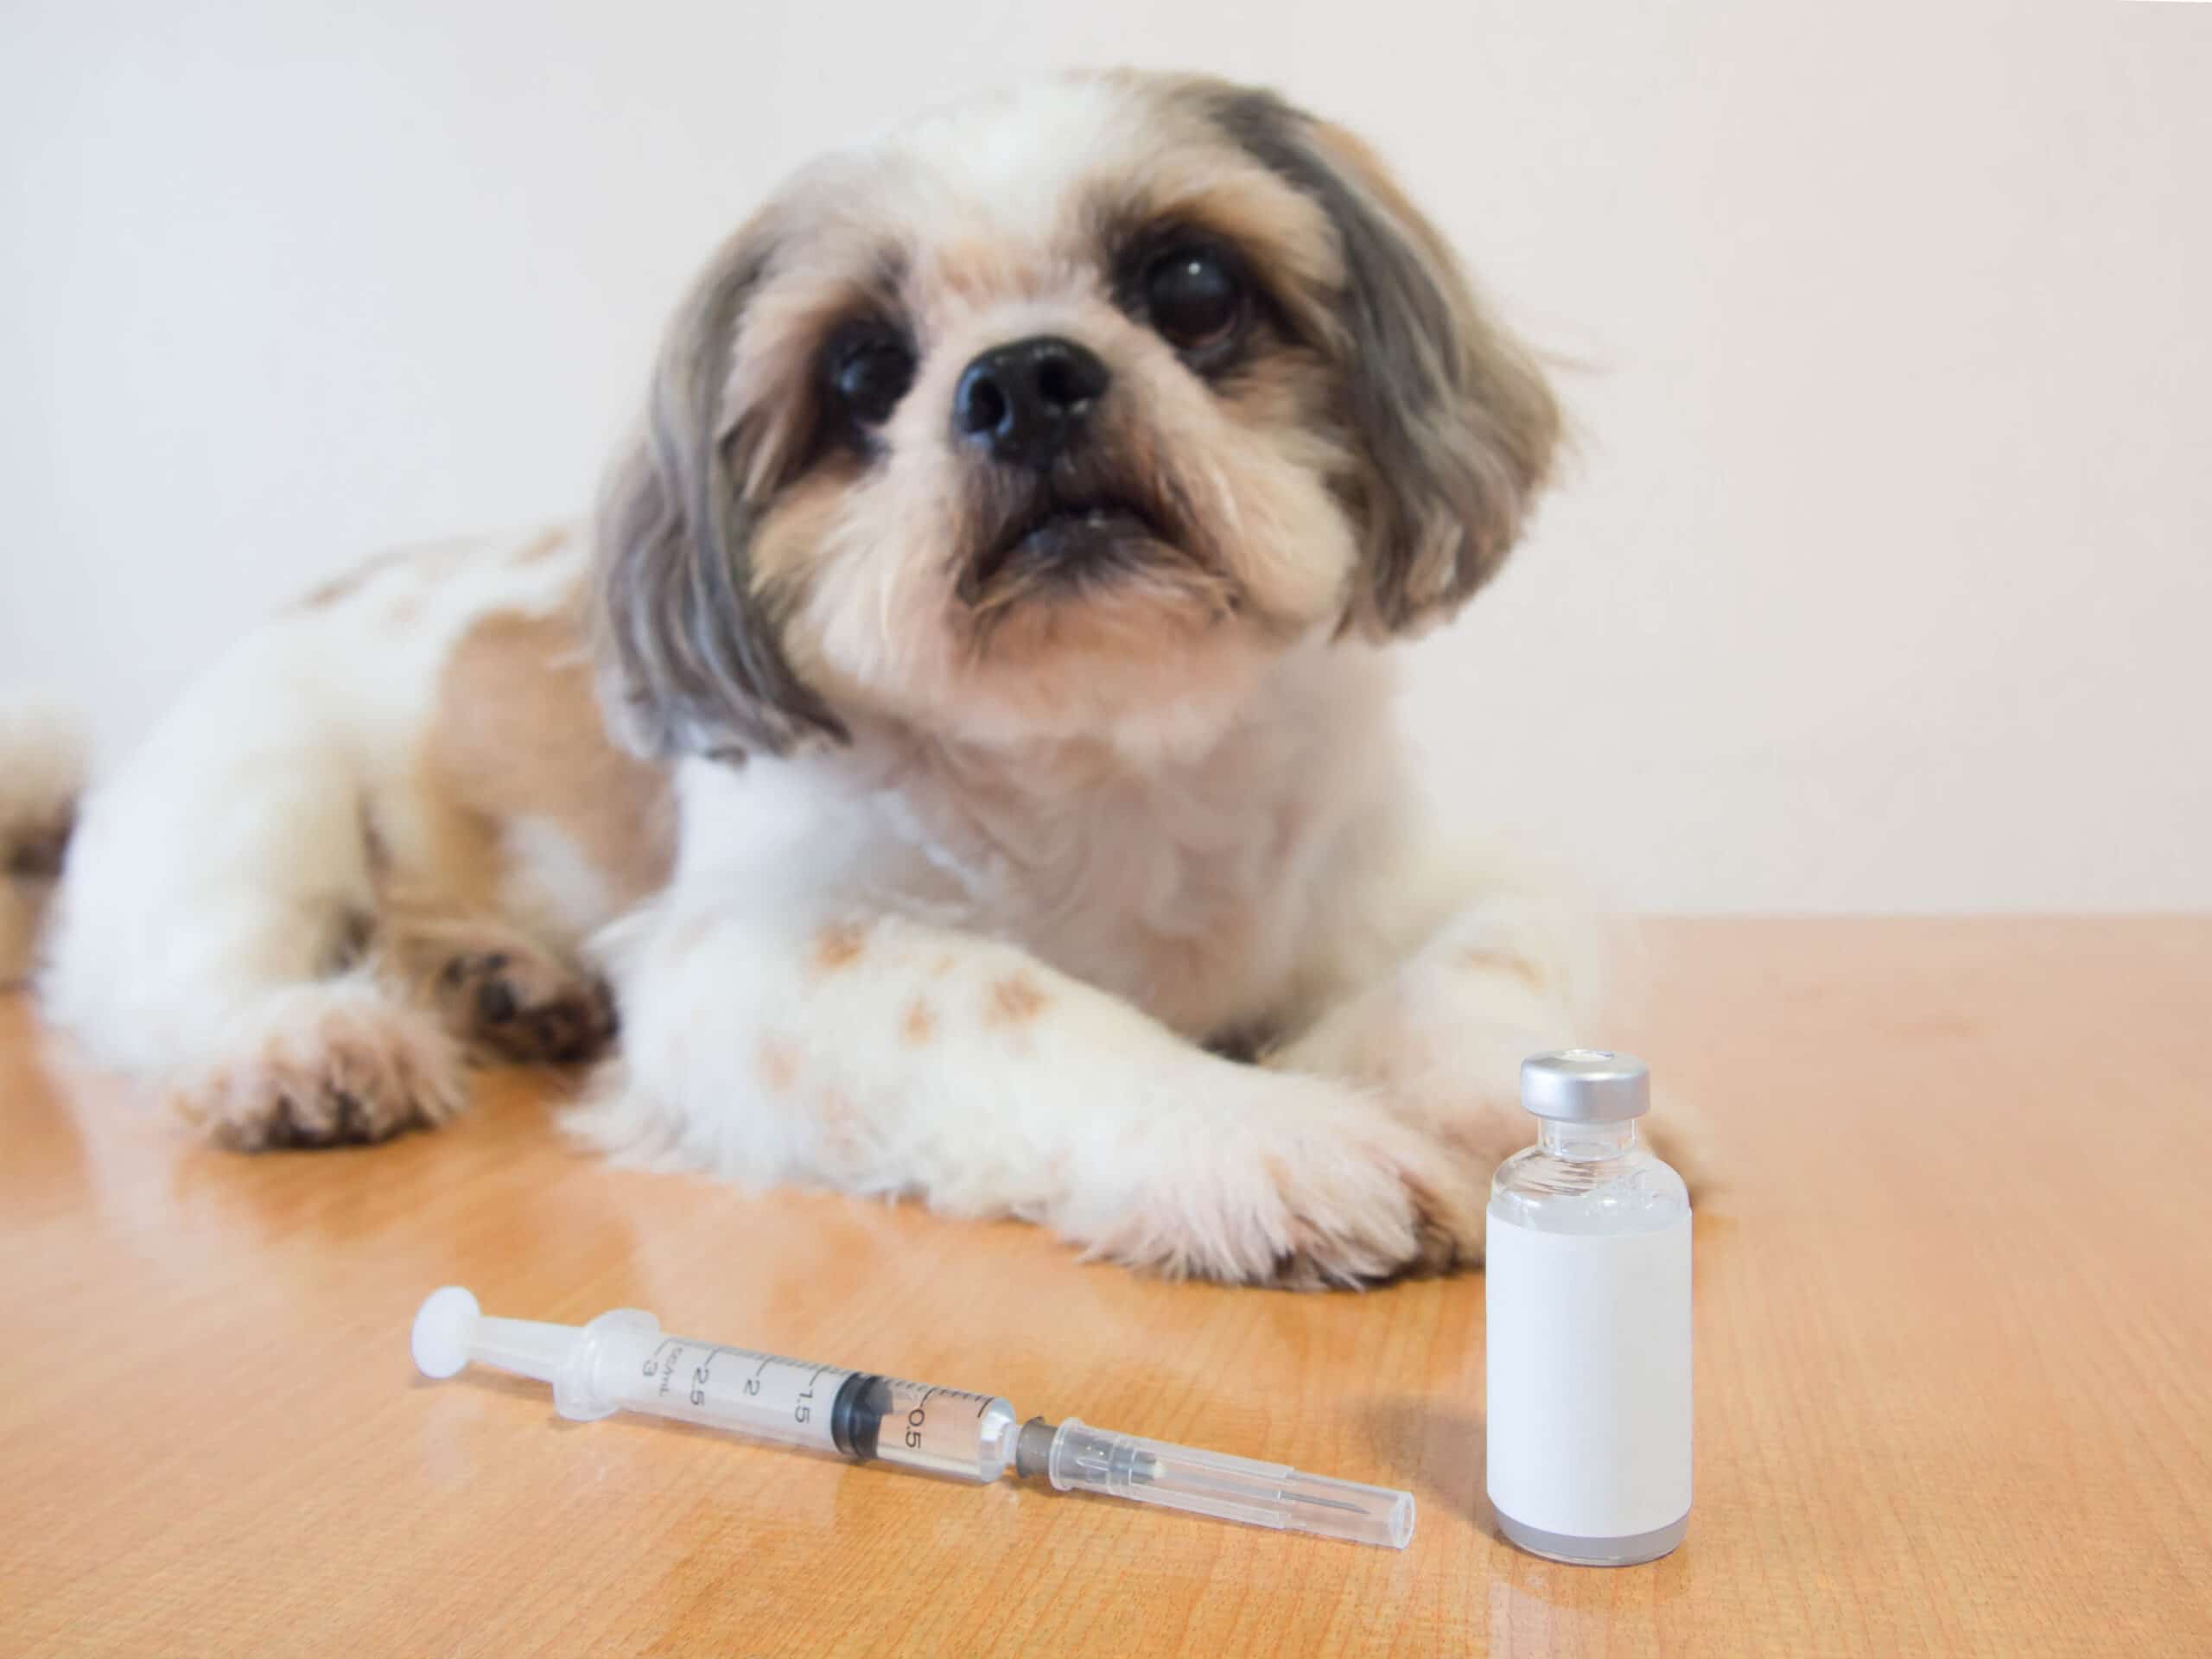 Hund mit Diabetes sitzt vor Insulinspritze